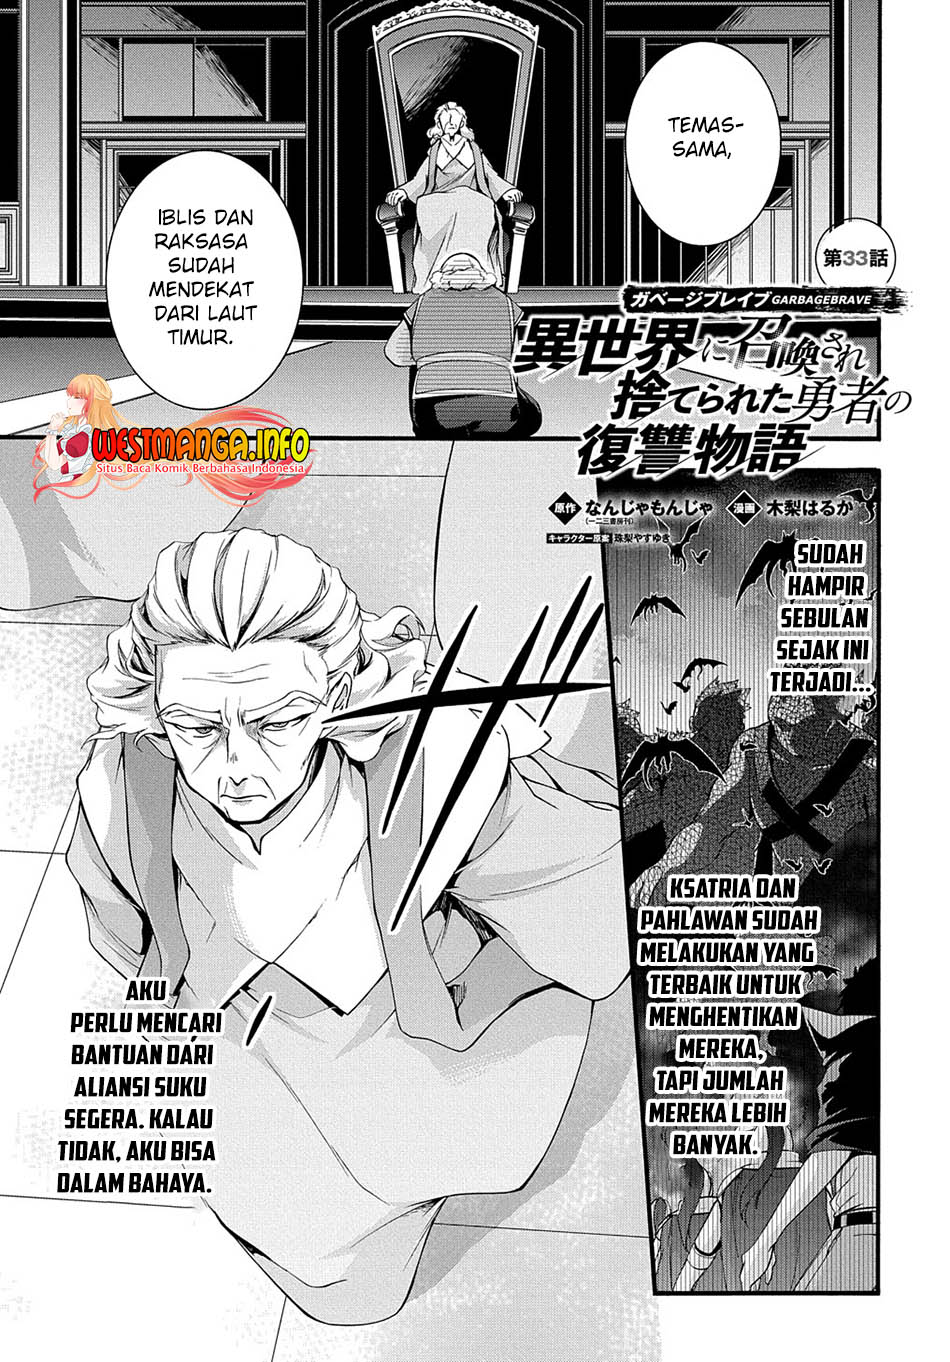 Garbage Brave: Isekai ni Shoukan Sare Suterareta Yuusha no Fukushuu Monogatari Chapter 33